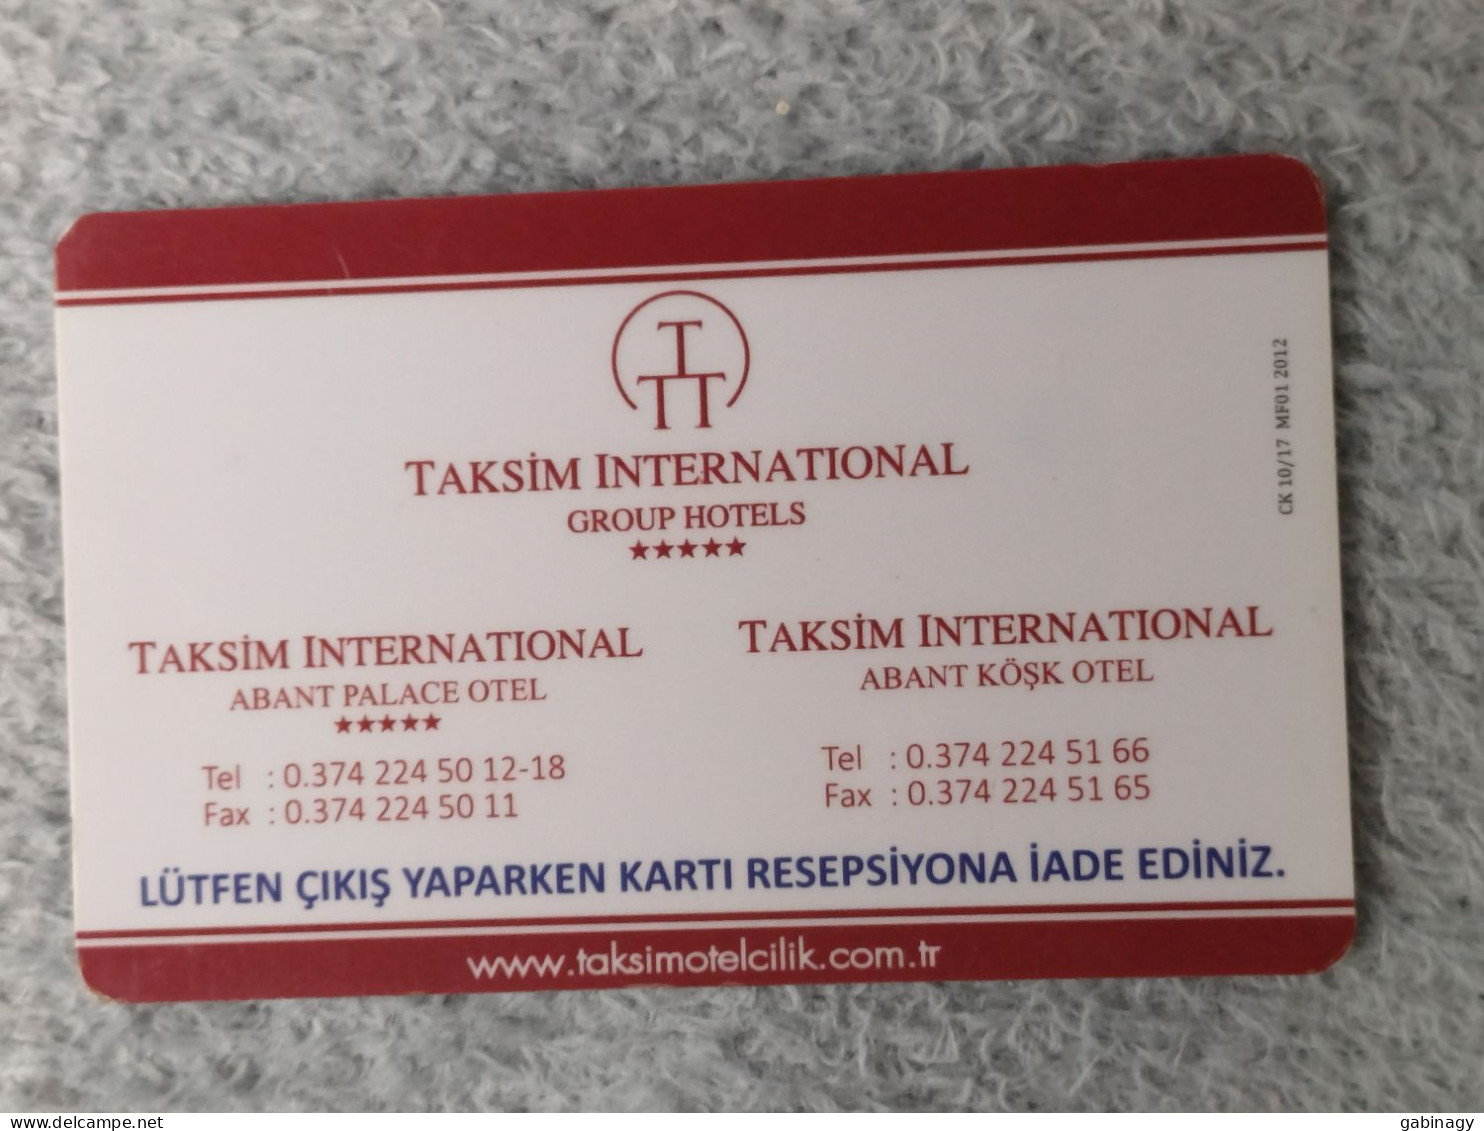 HOTEL KEYS - 2627 - TURKEY - TAKSIM INTERNATIONAL HOTELS - ABANT PALACE OTELI - Hotelsleutels (kaarten)